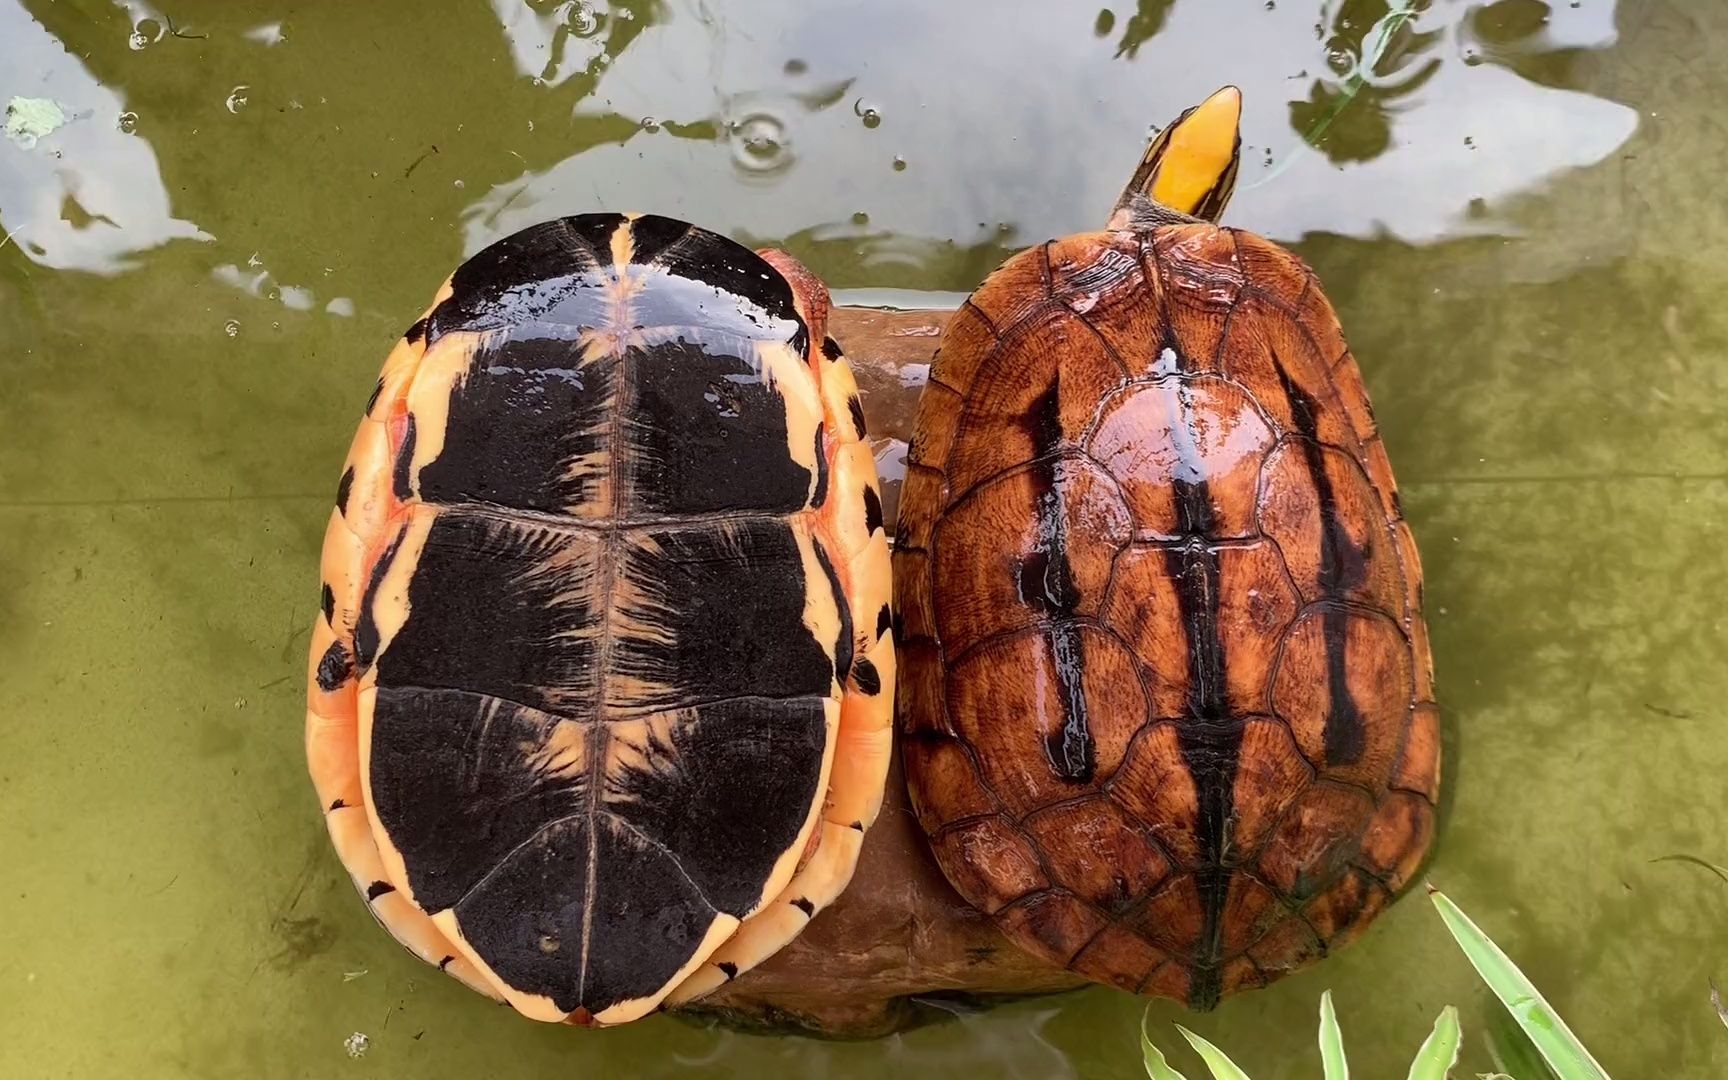 名贵龟品种图片